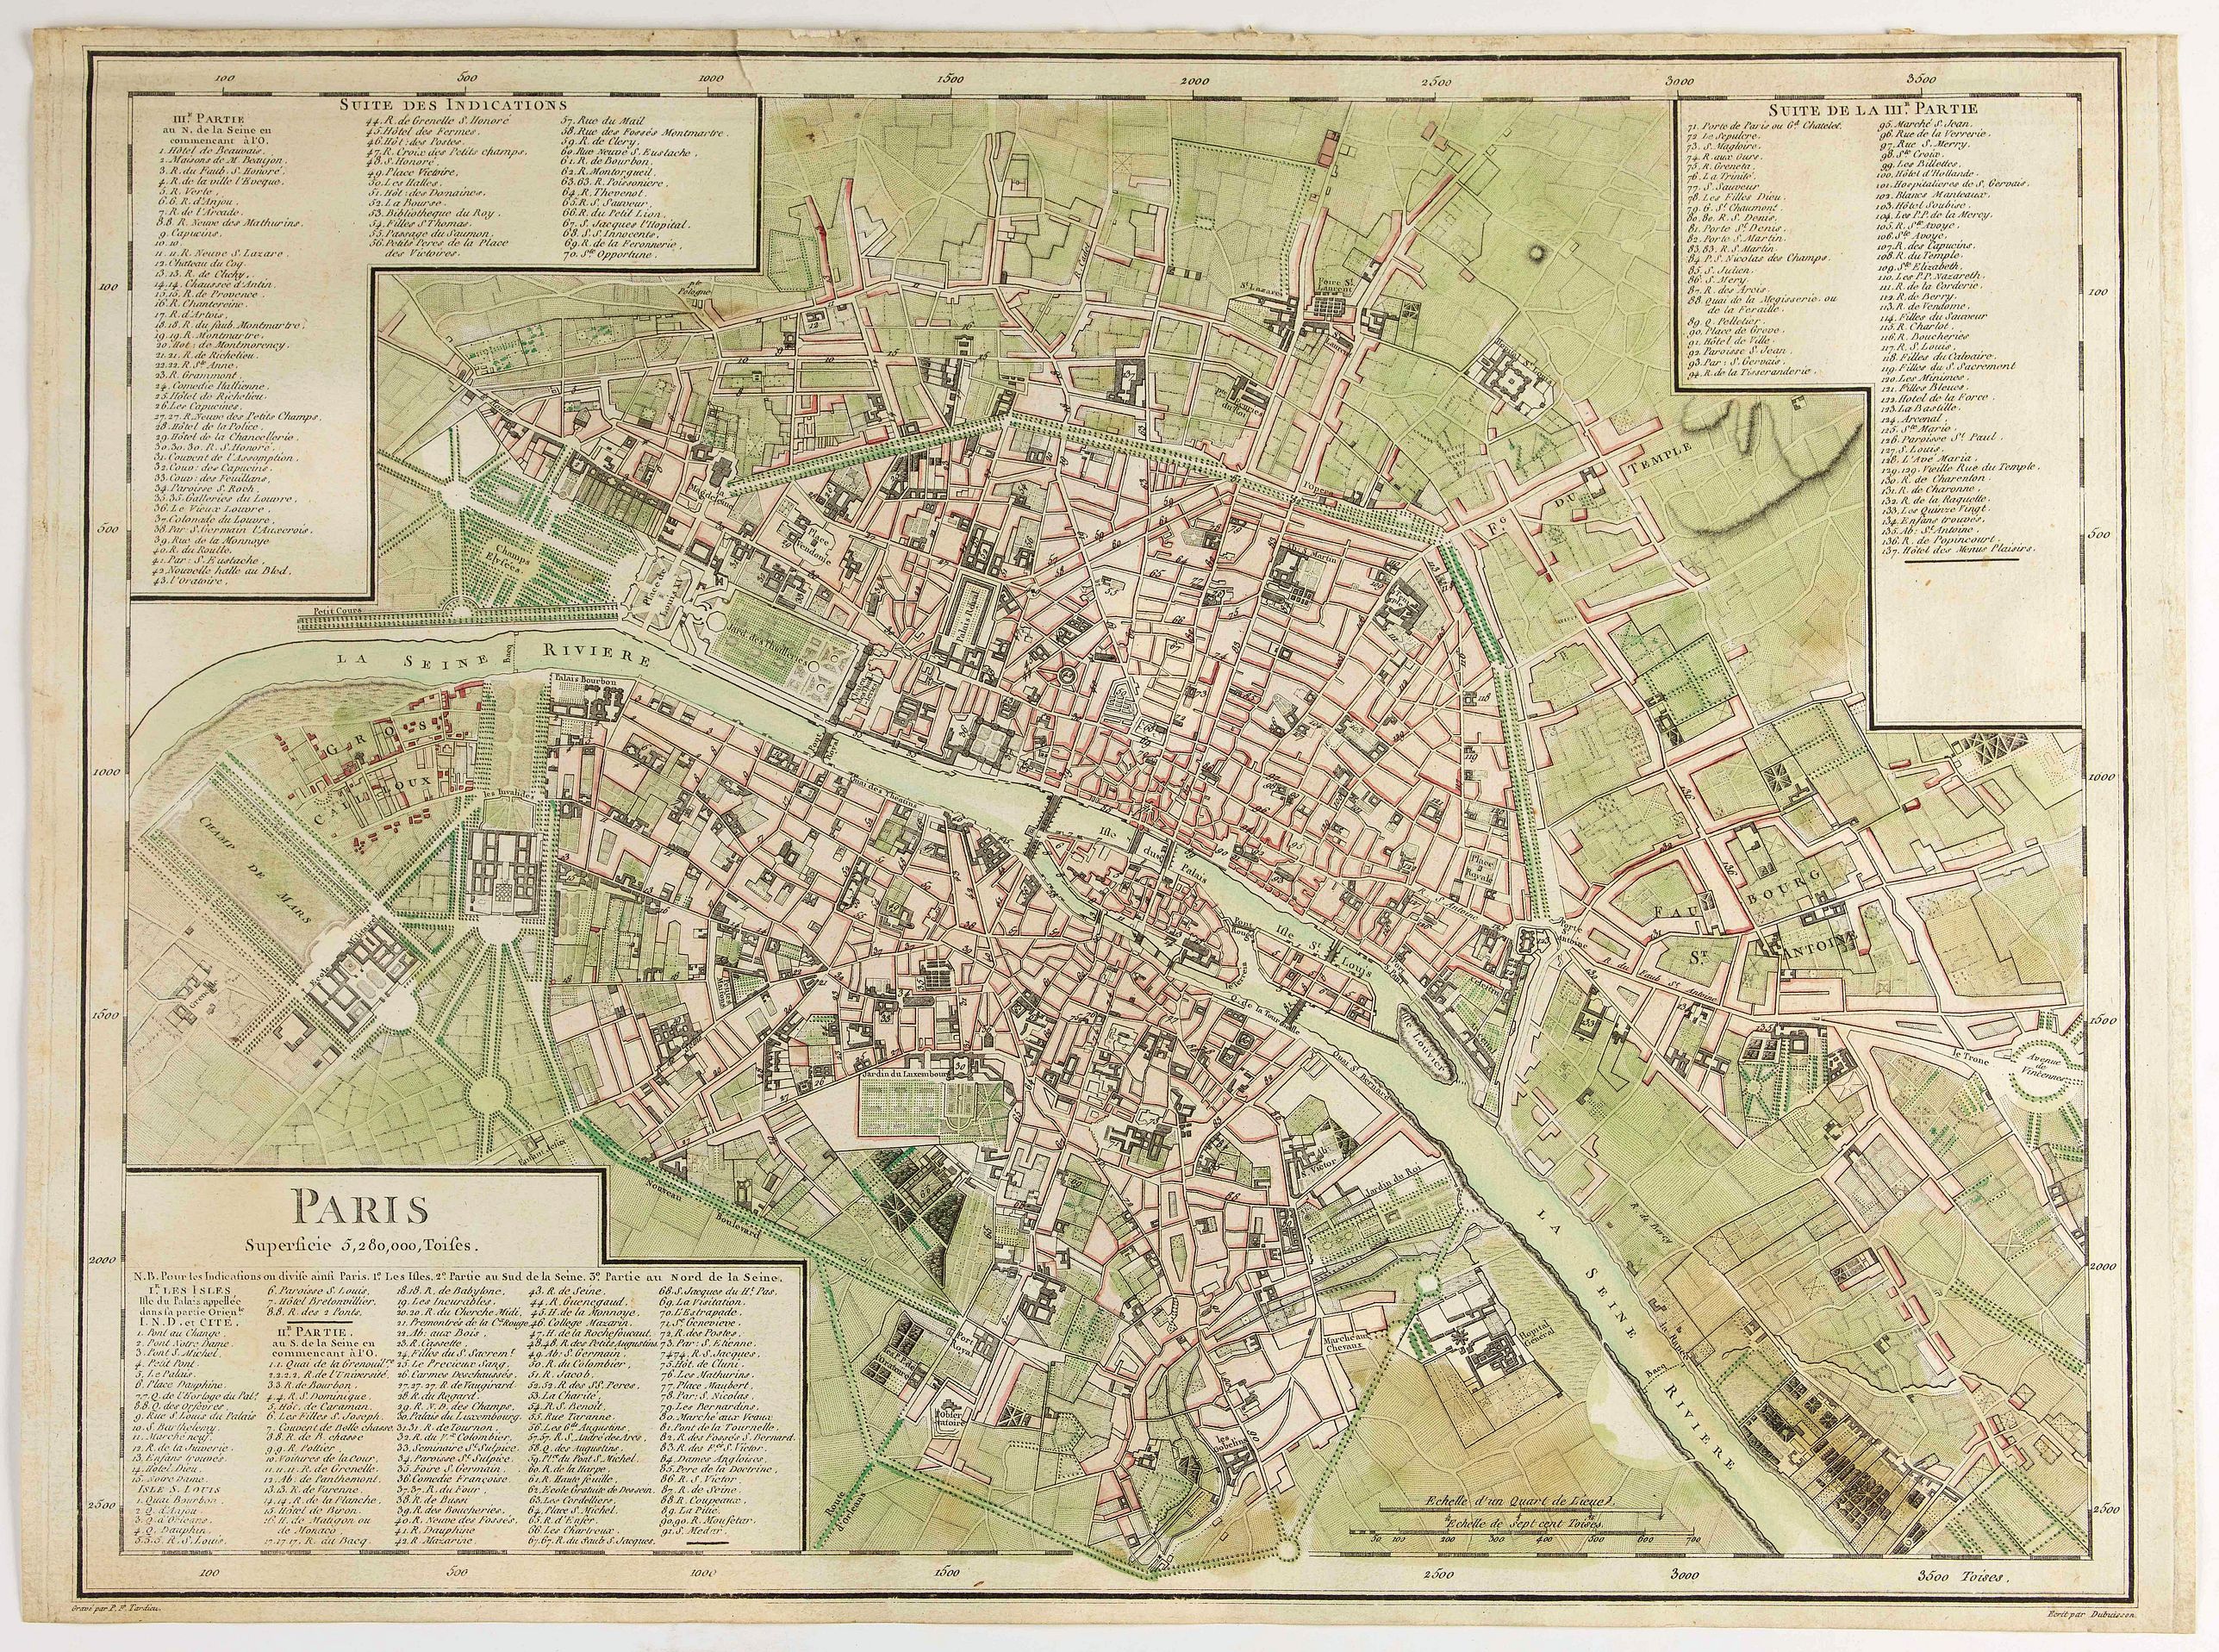 Paris Superficie 5,280,000 Toises. - Old map by TARDIEU, P. F.